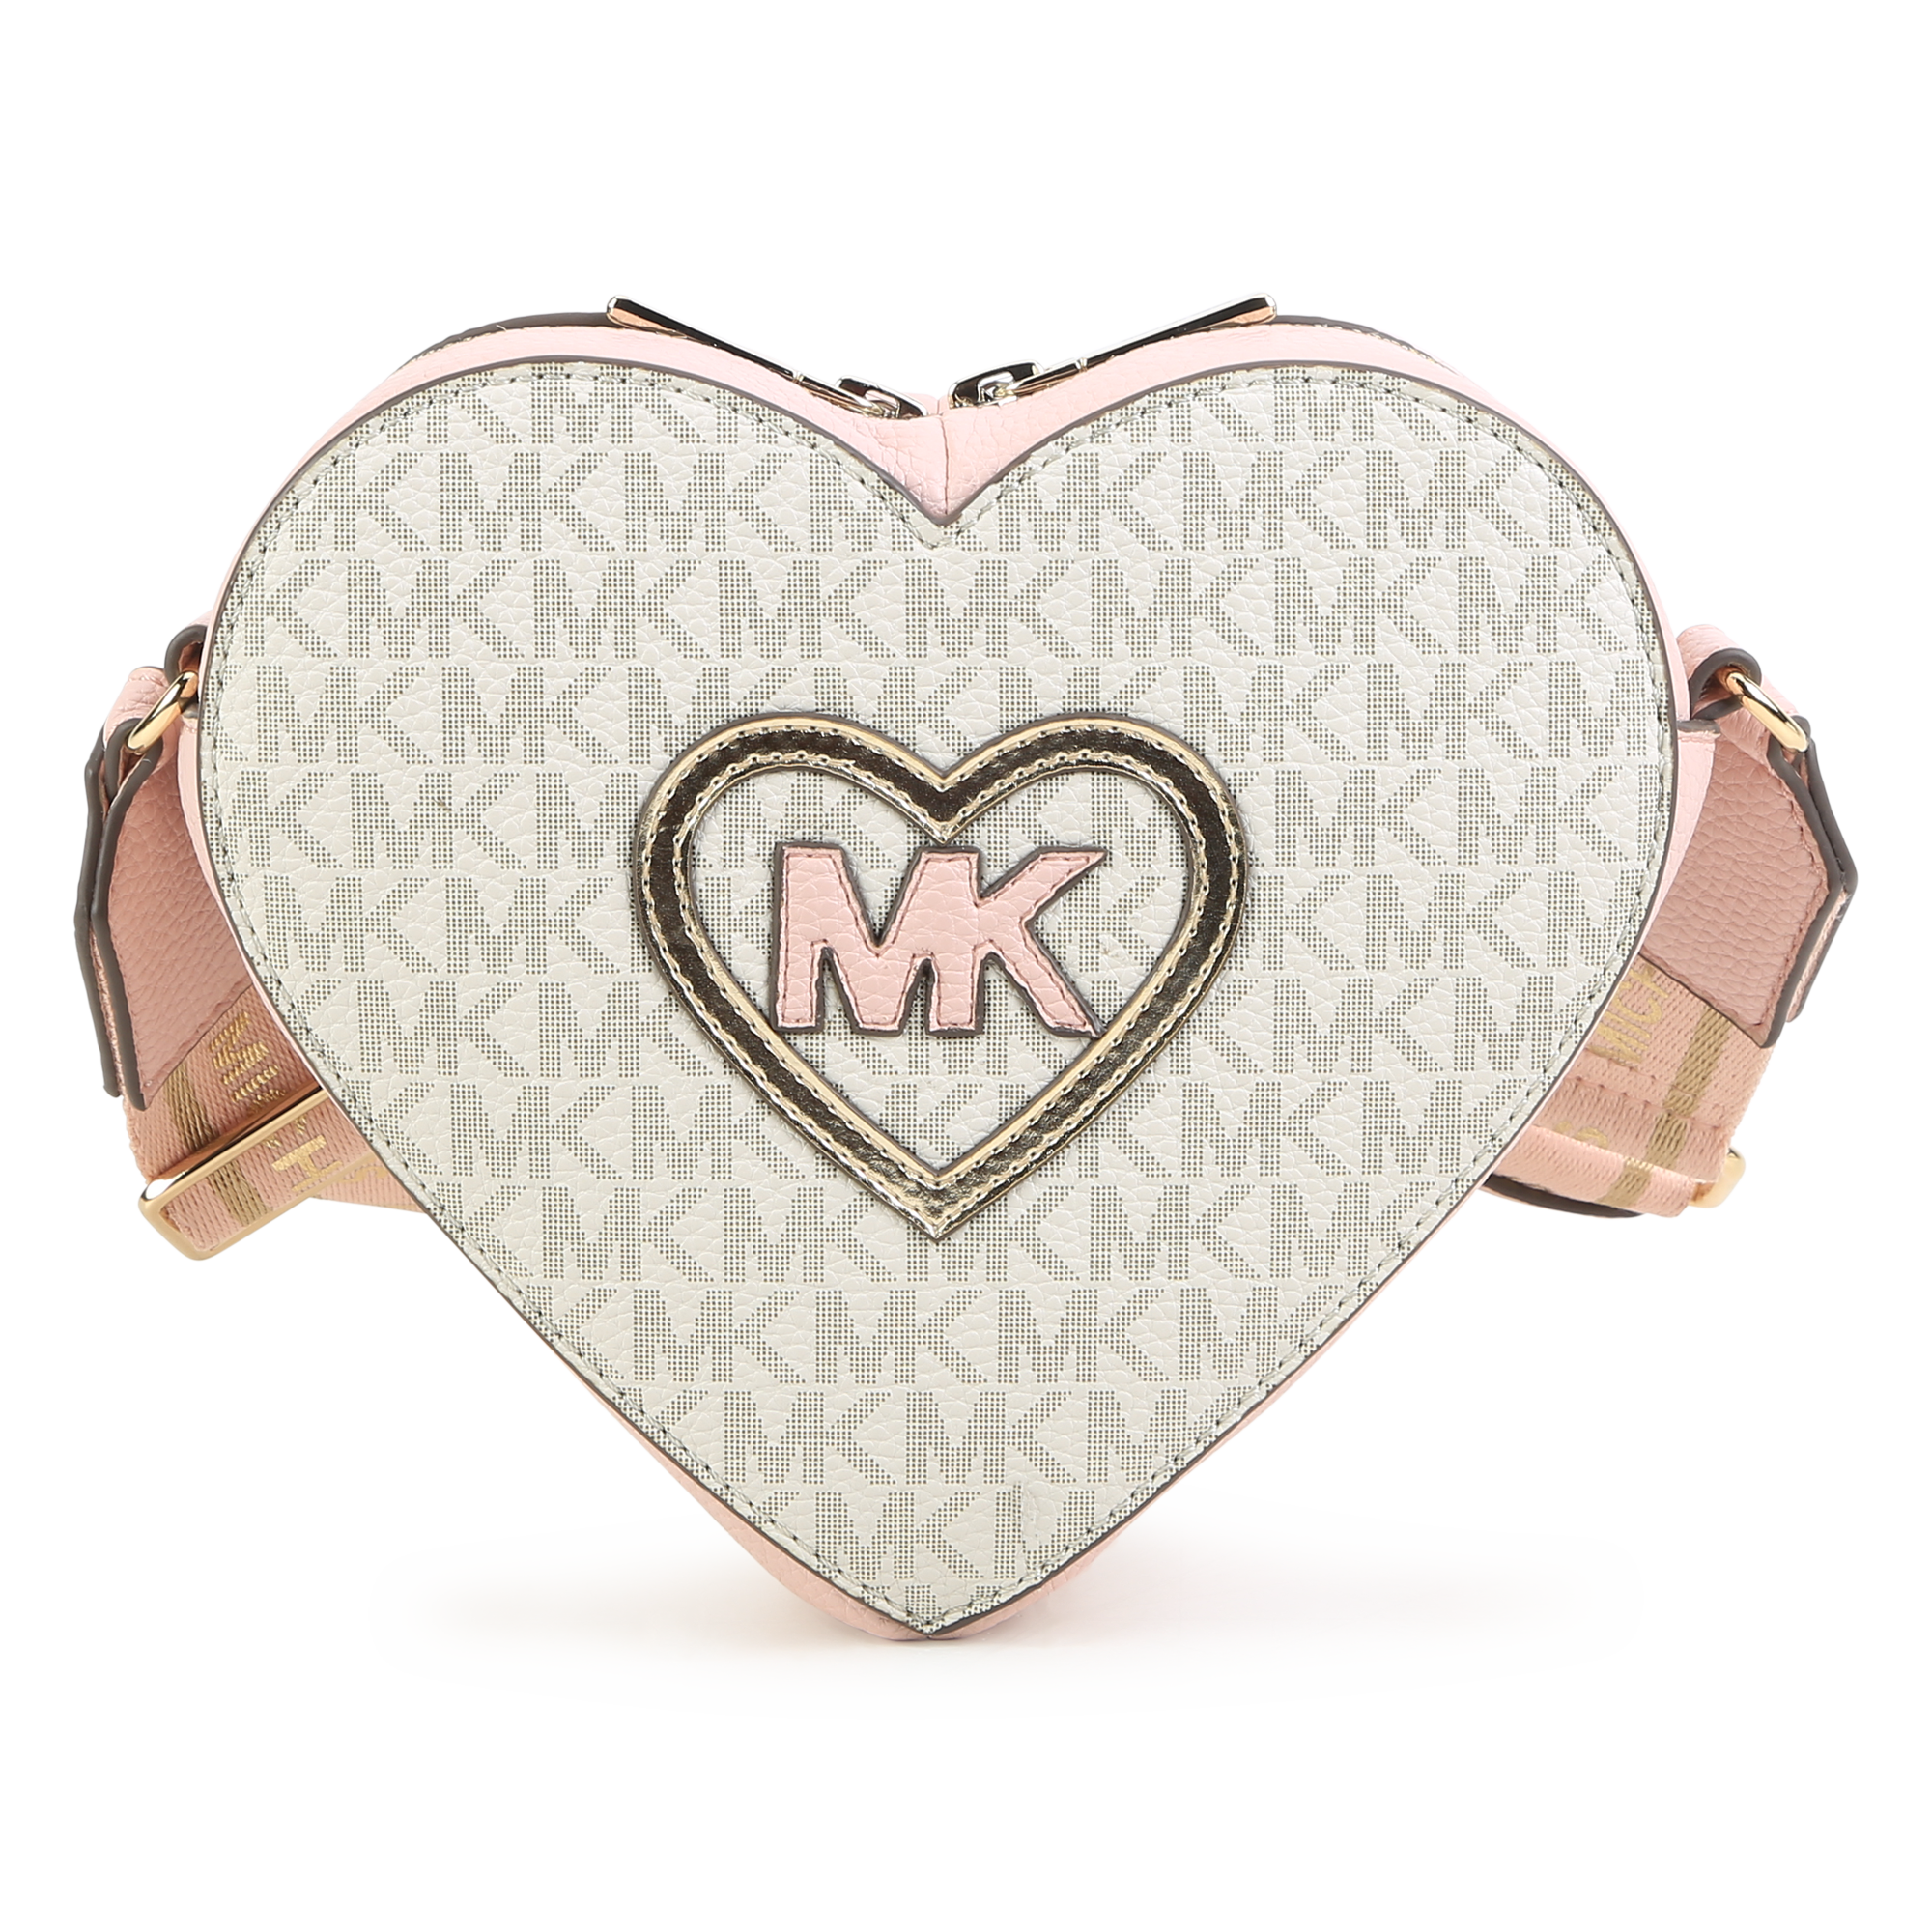 Buy Michael Kors Women's Trisha Large Shoulder Bag Tote Purse Handbag  (Brown) at Amazon.in